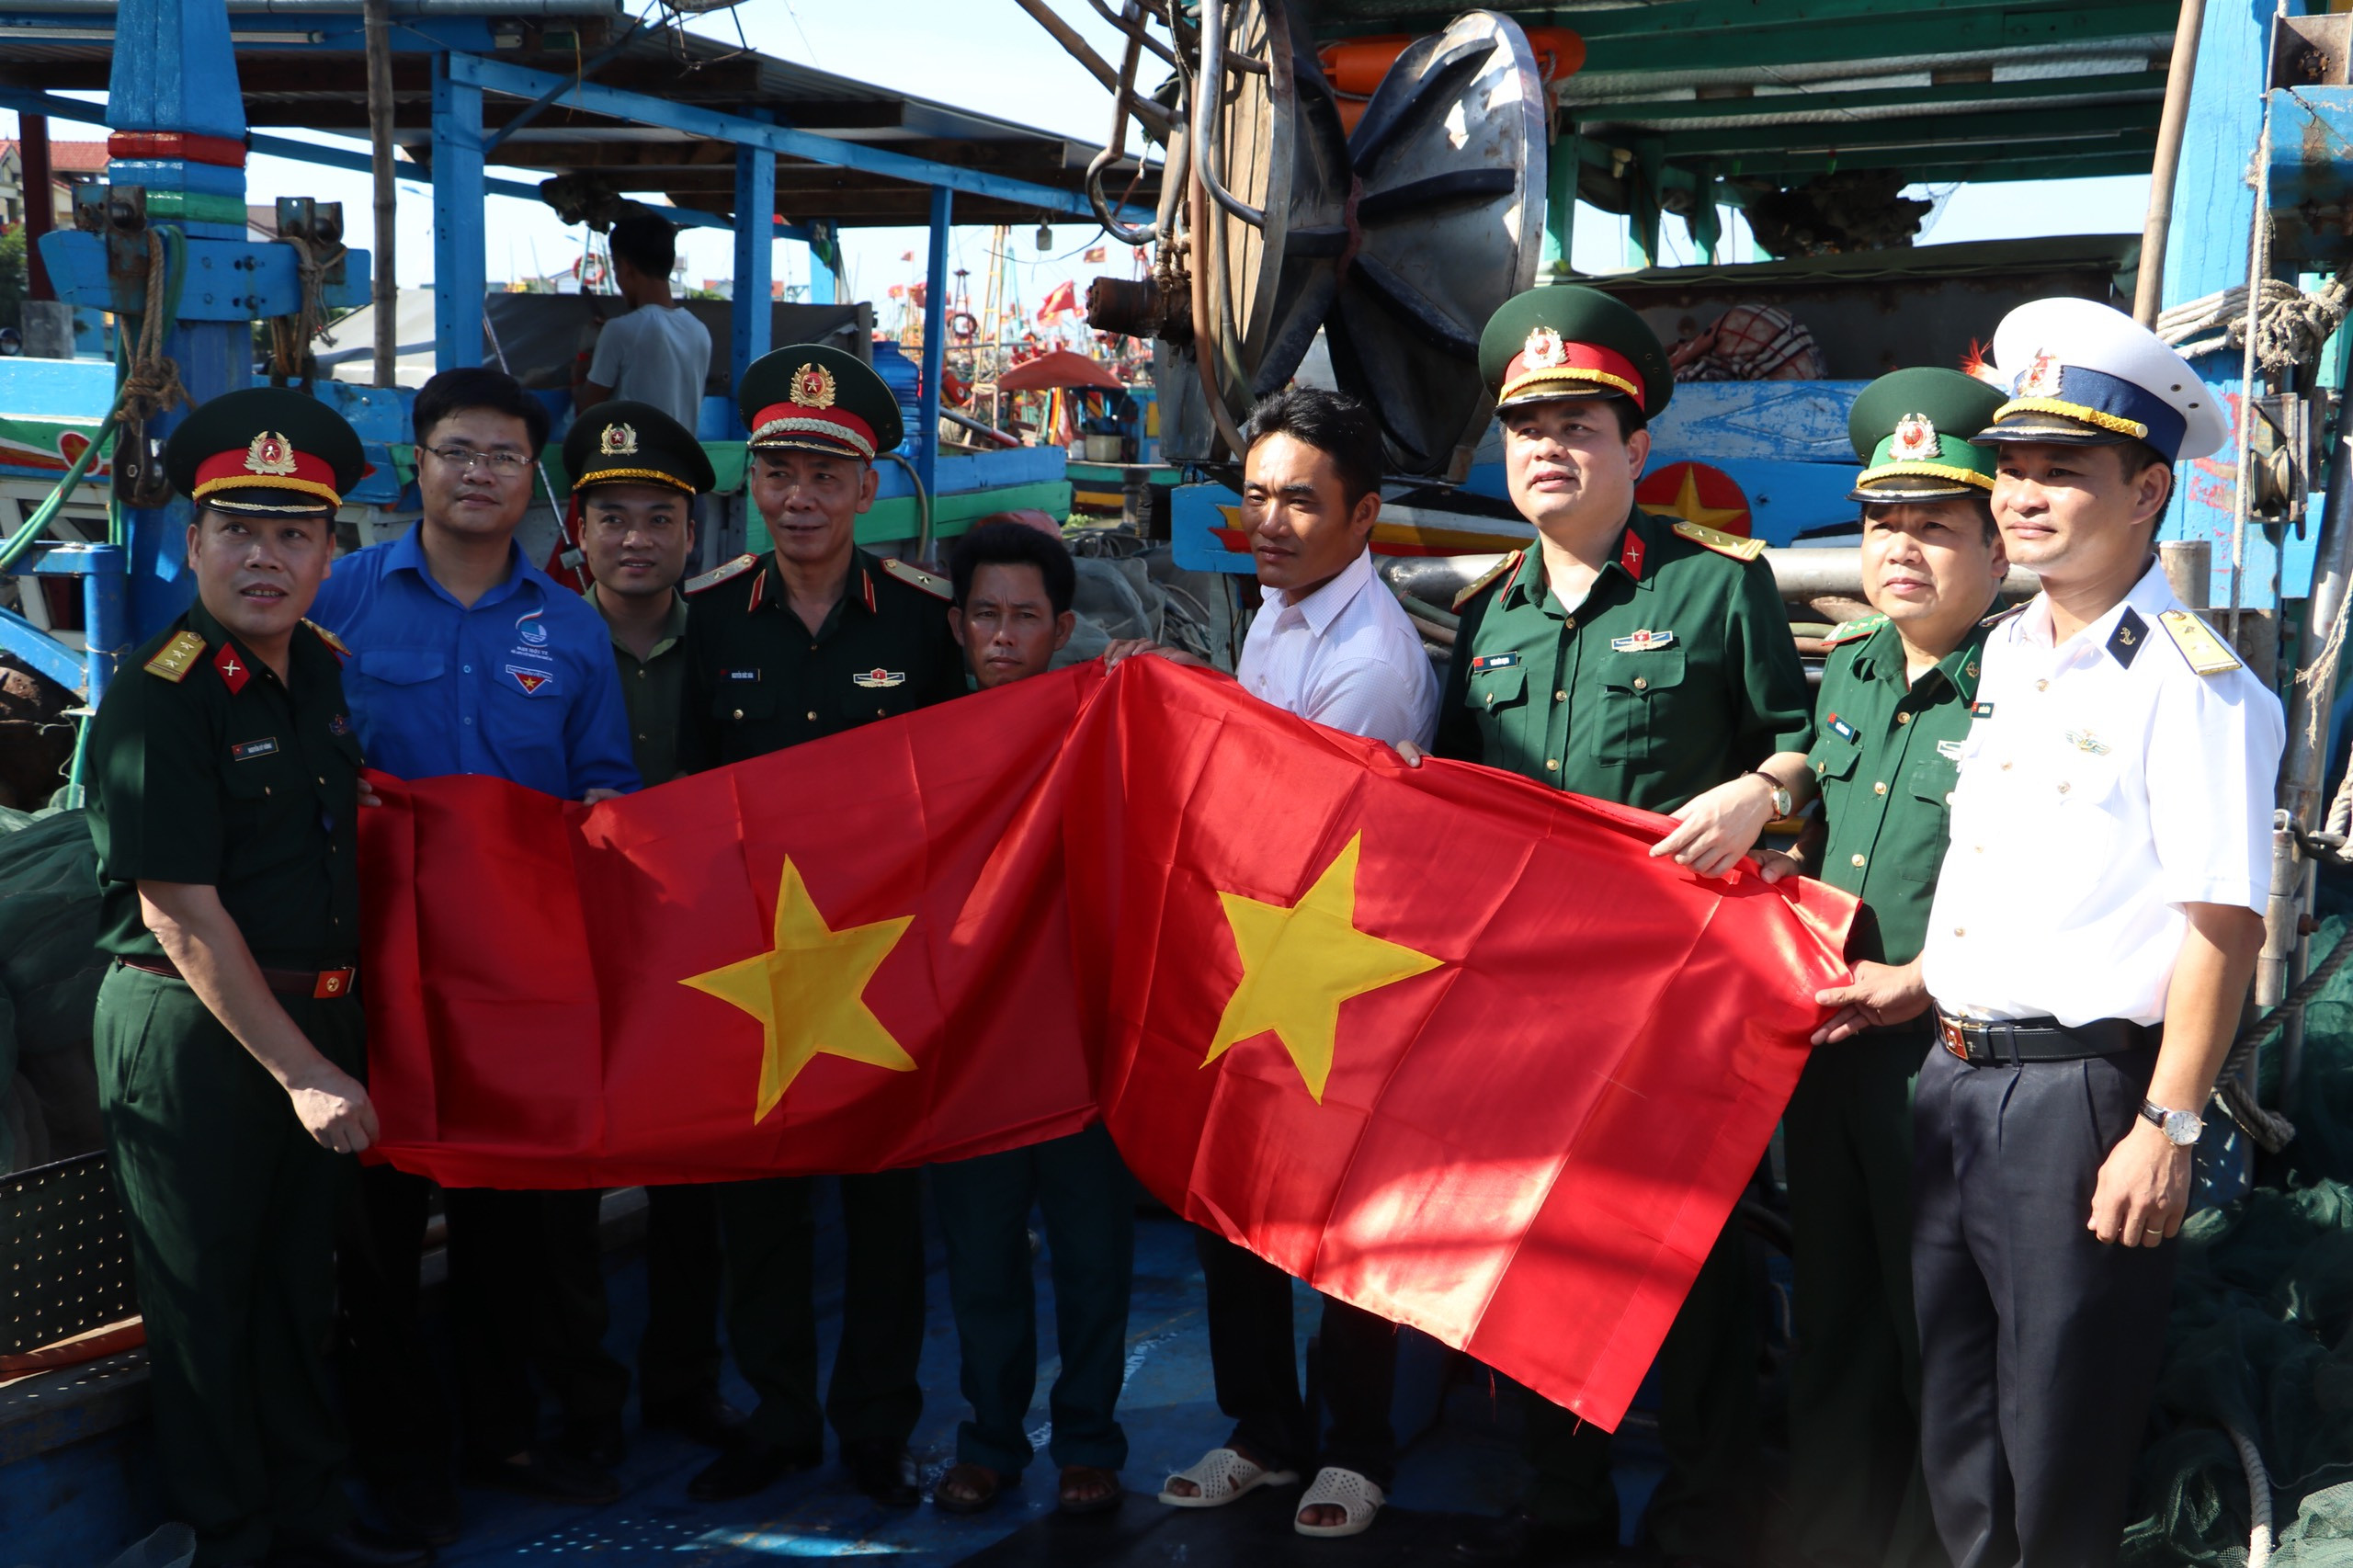 đồng chí Thiếu tướng Nguyễn Đức Hóa, Phó Chính ủy Quân khu 4 cùng các đơn vị tham dự chương trình “Tuổi trẻ Lực lượng vũ trang Quân khu 4 với biển, đảo quê hương” tặng cờ tổ Quốc cho ngư dân huyện Diễn Châu